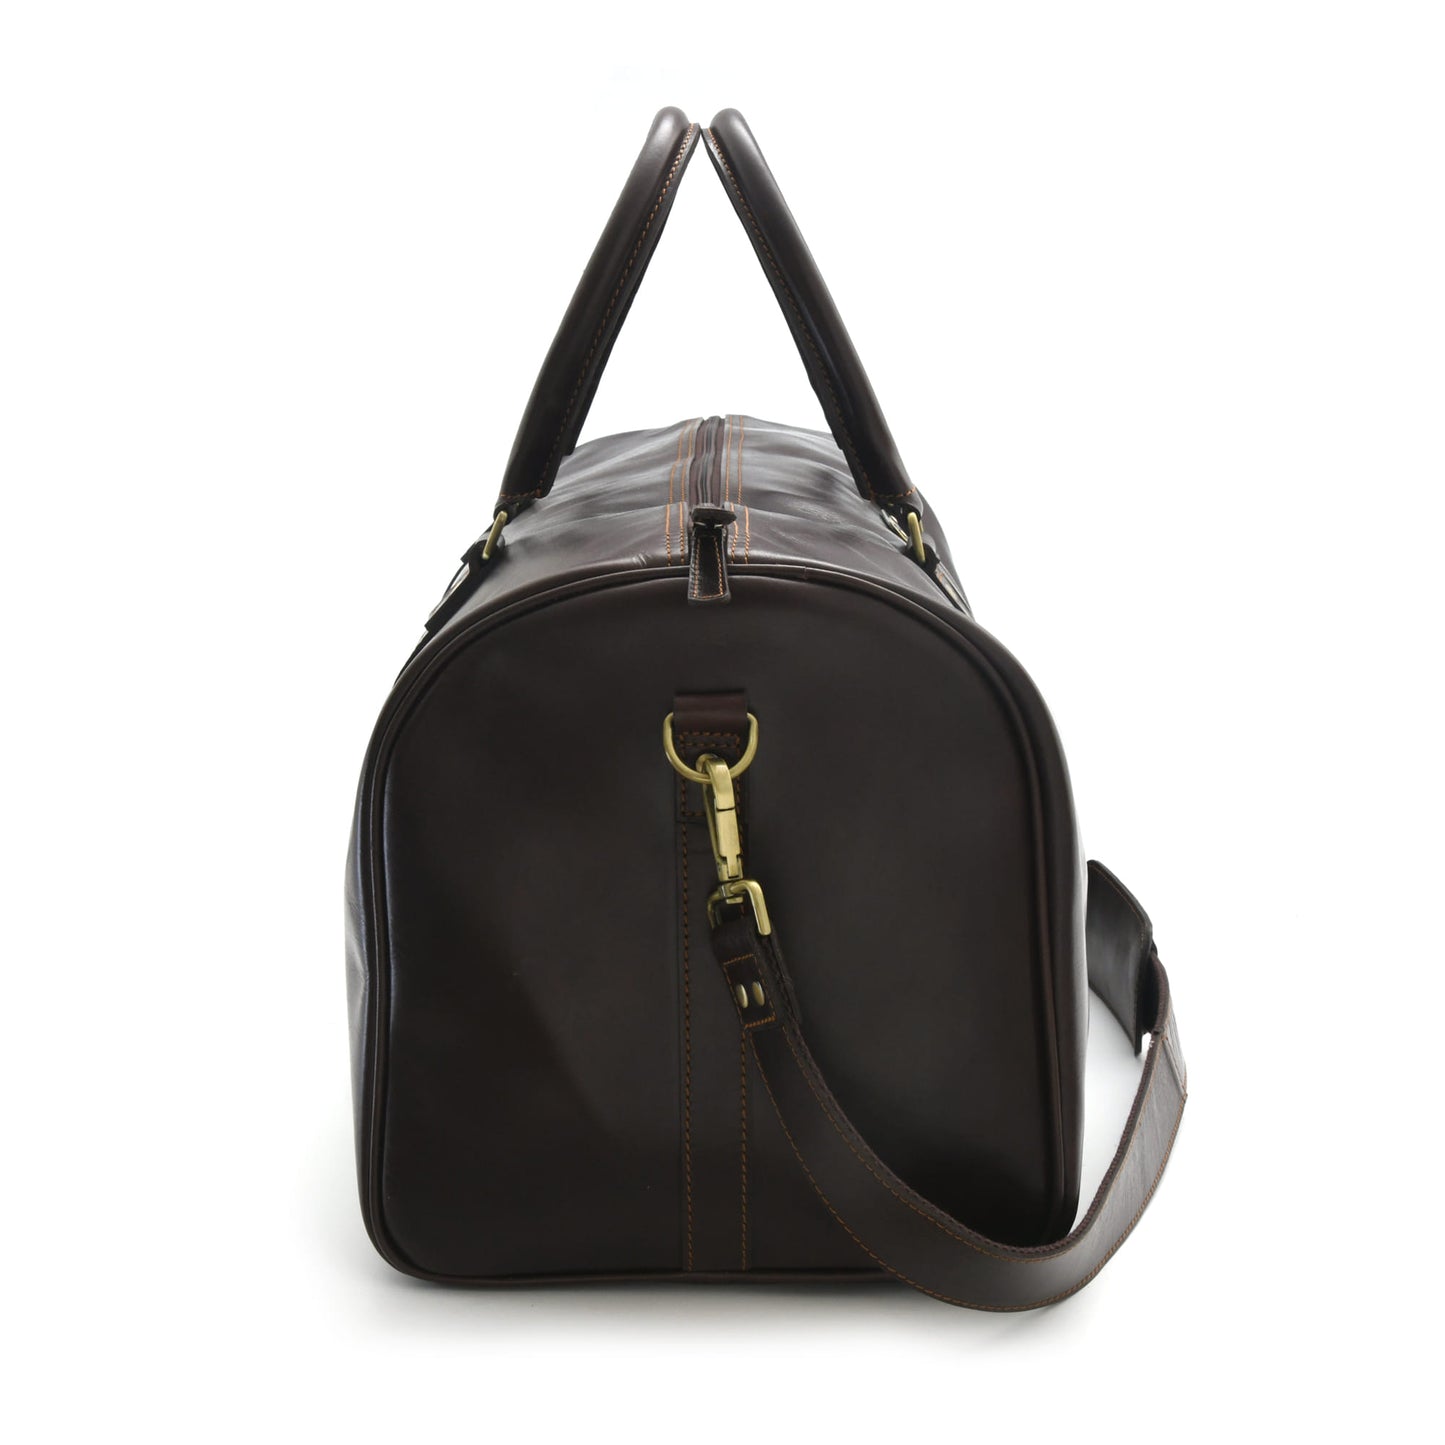 Style n Craft 392101 Duffle Bag in Full Grain Dark Brown Leather - Side View